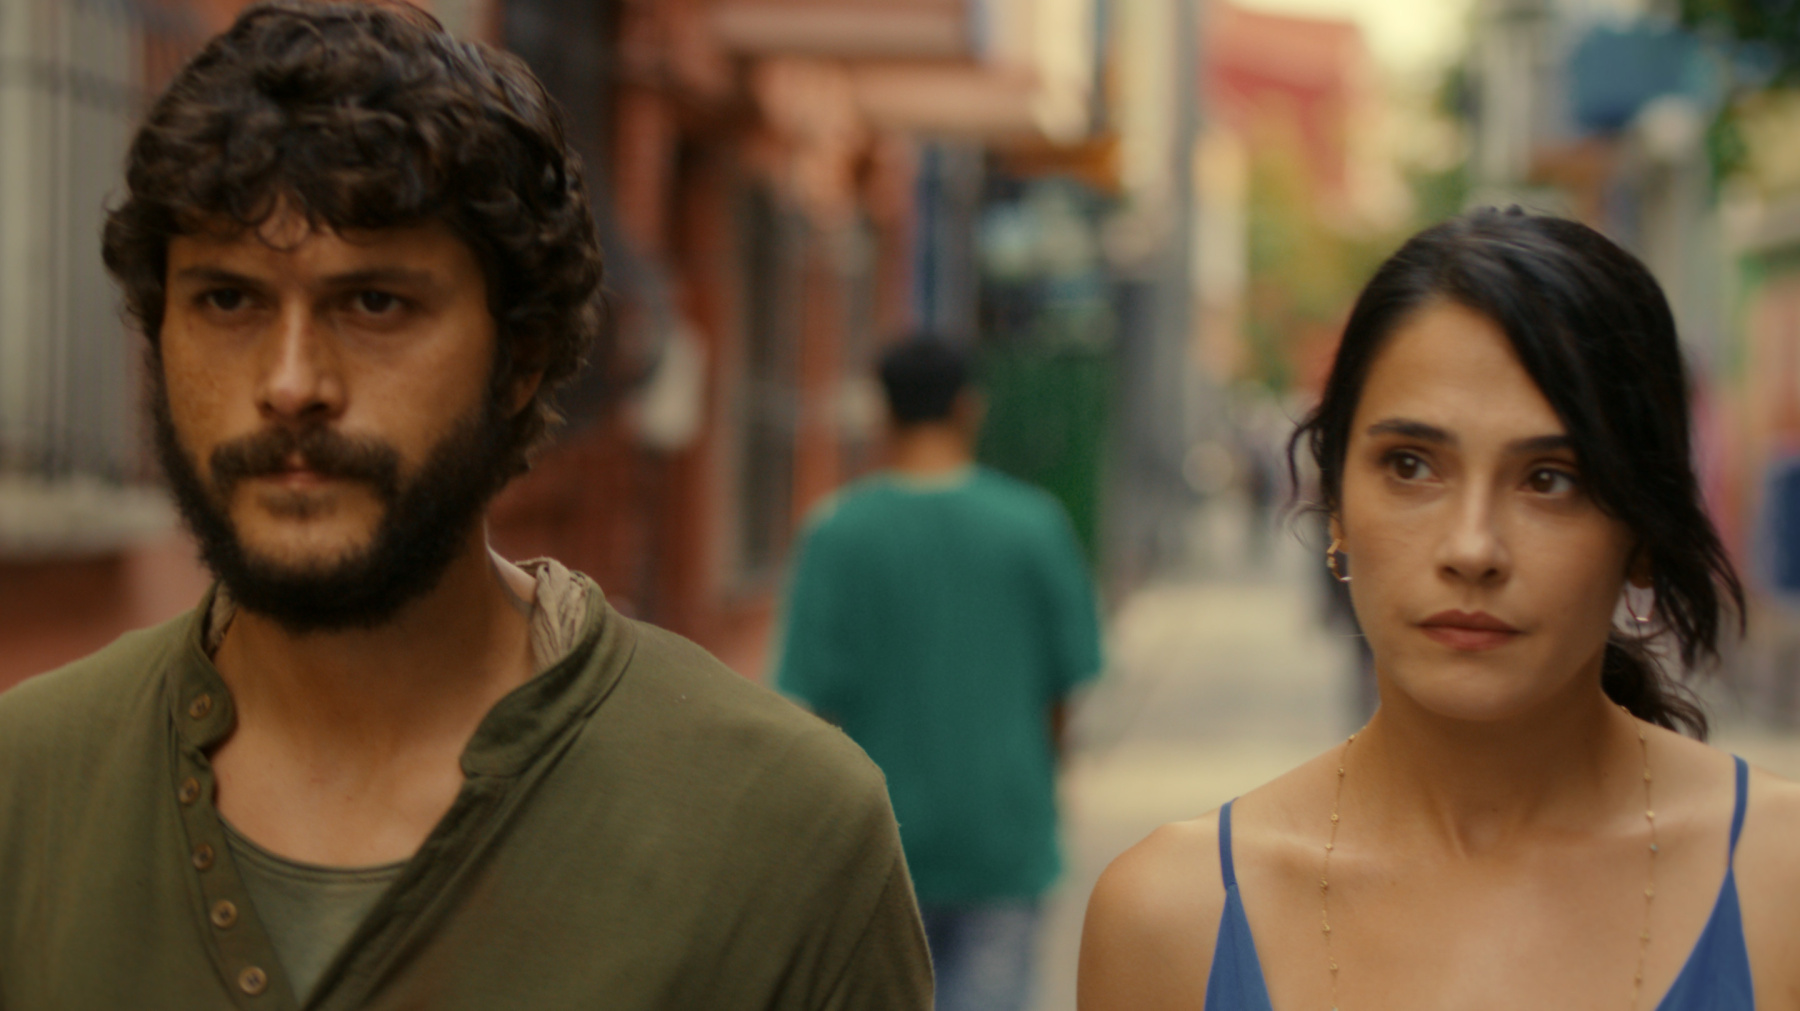 Las cenizas: drama romántico turco en Netflix 